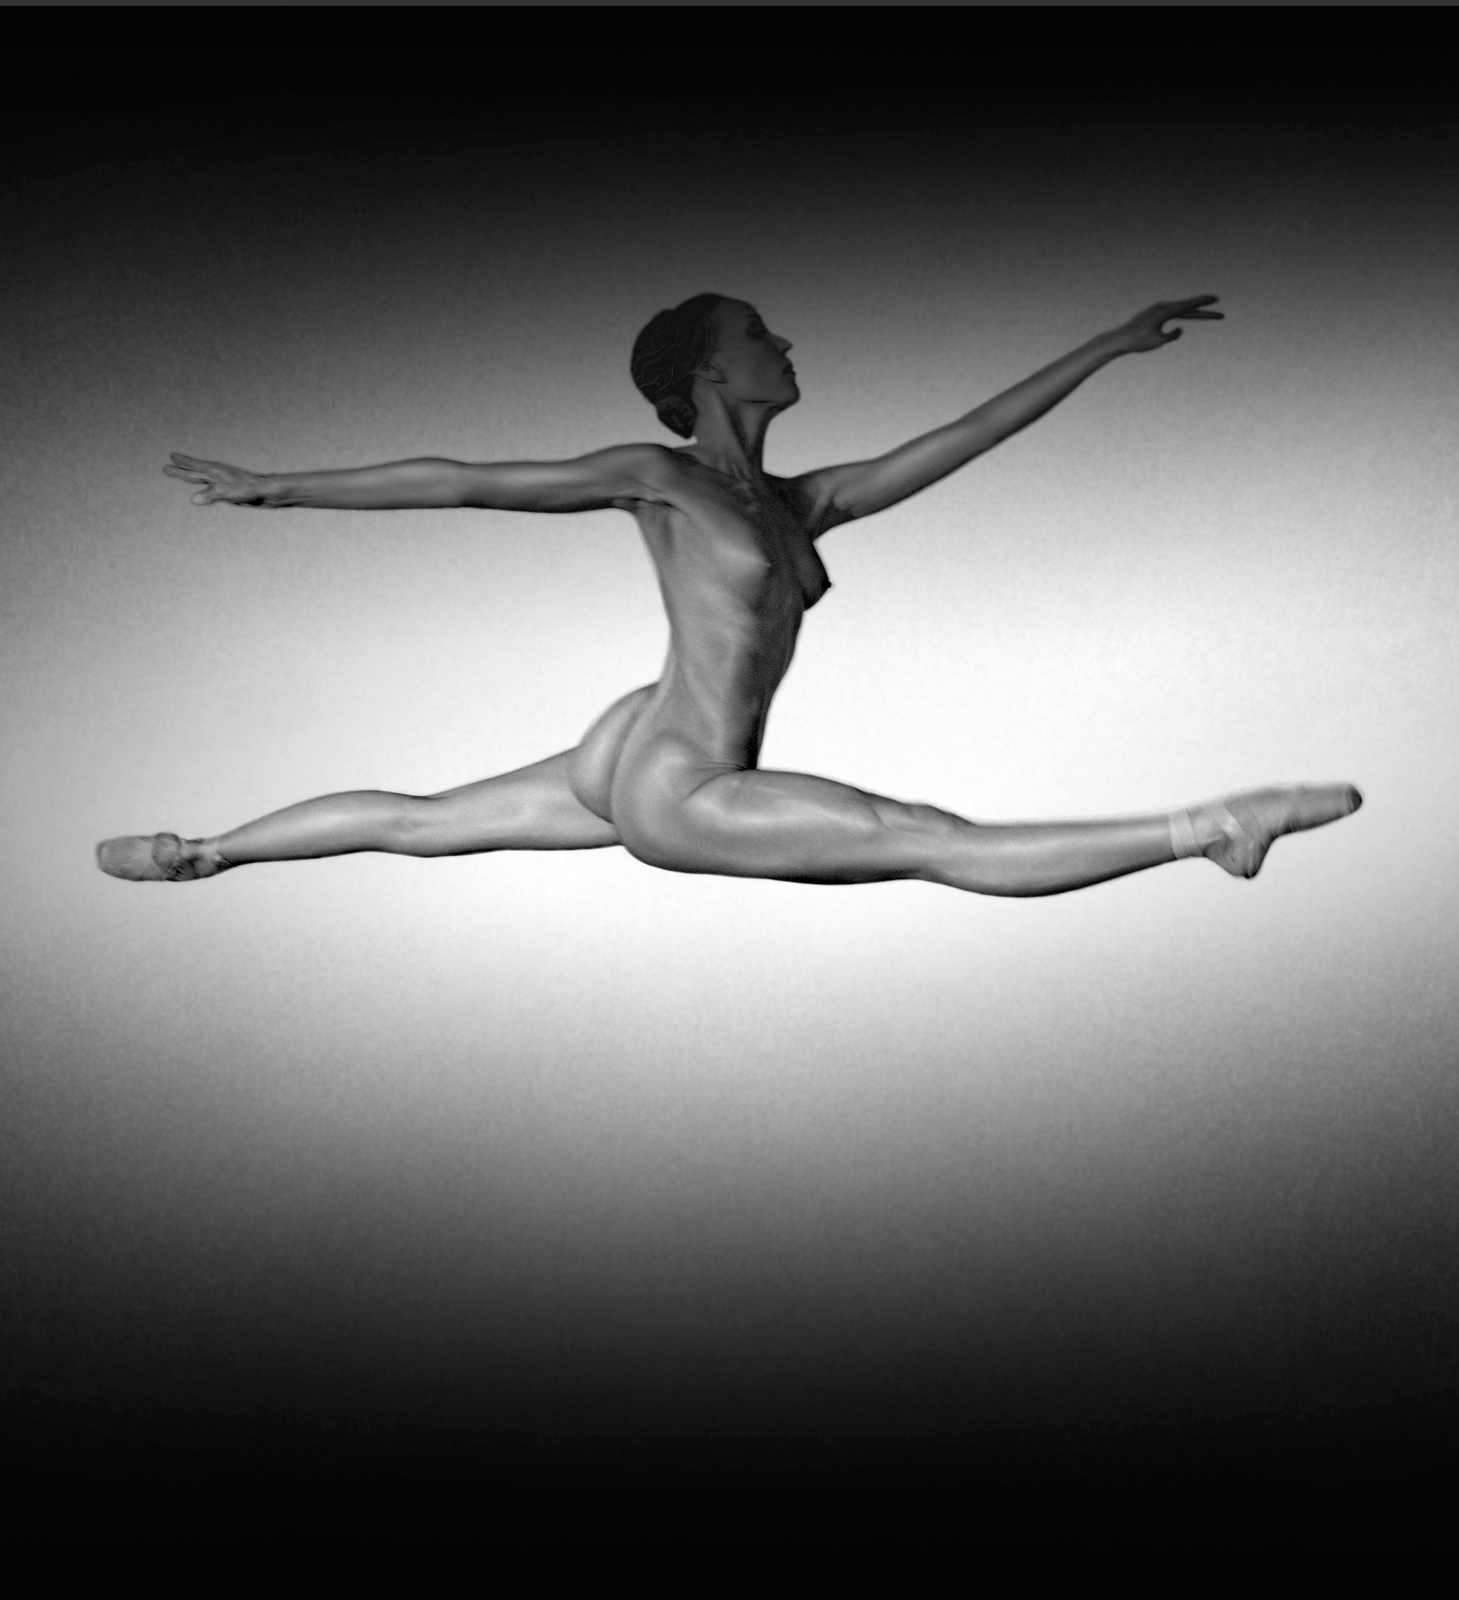 Эротика балеринок выполняют упражнения голыми 34 фото